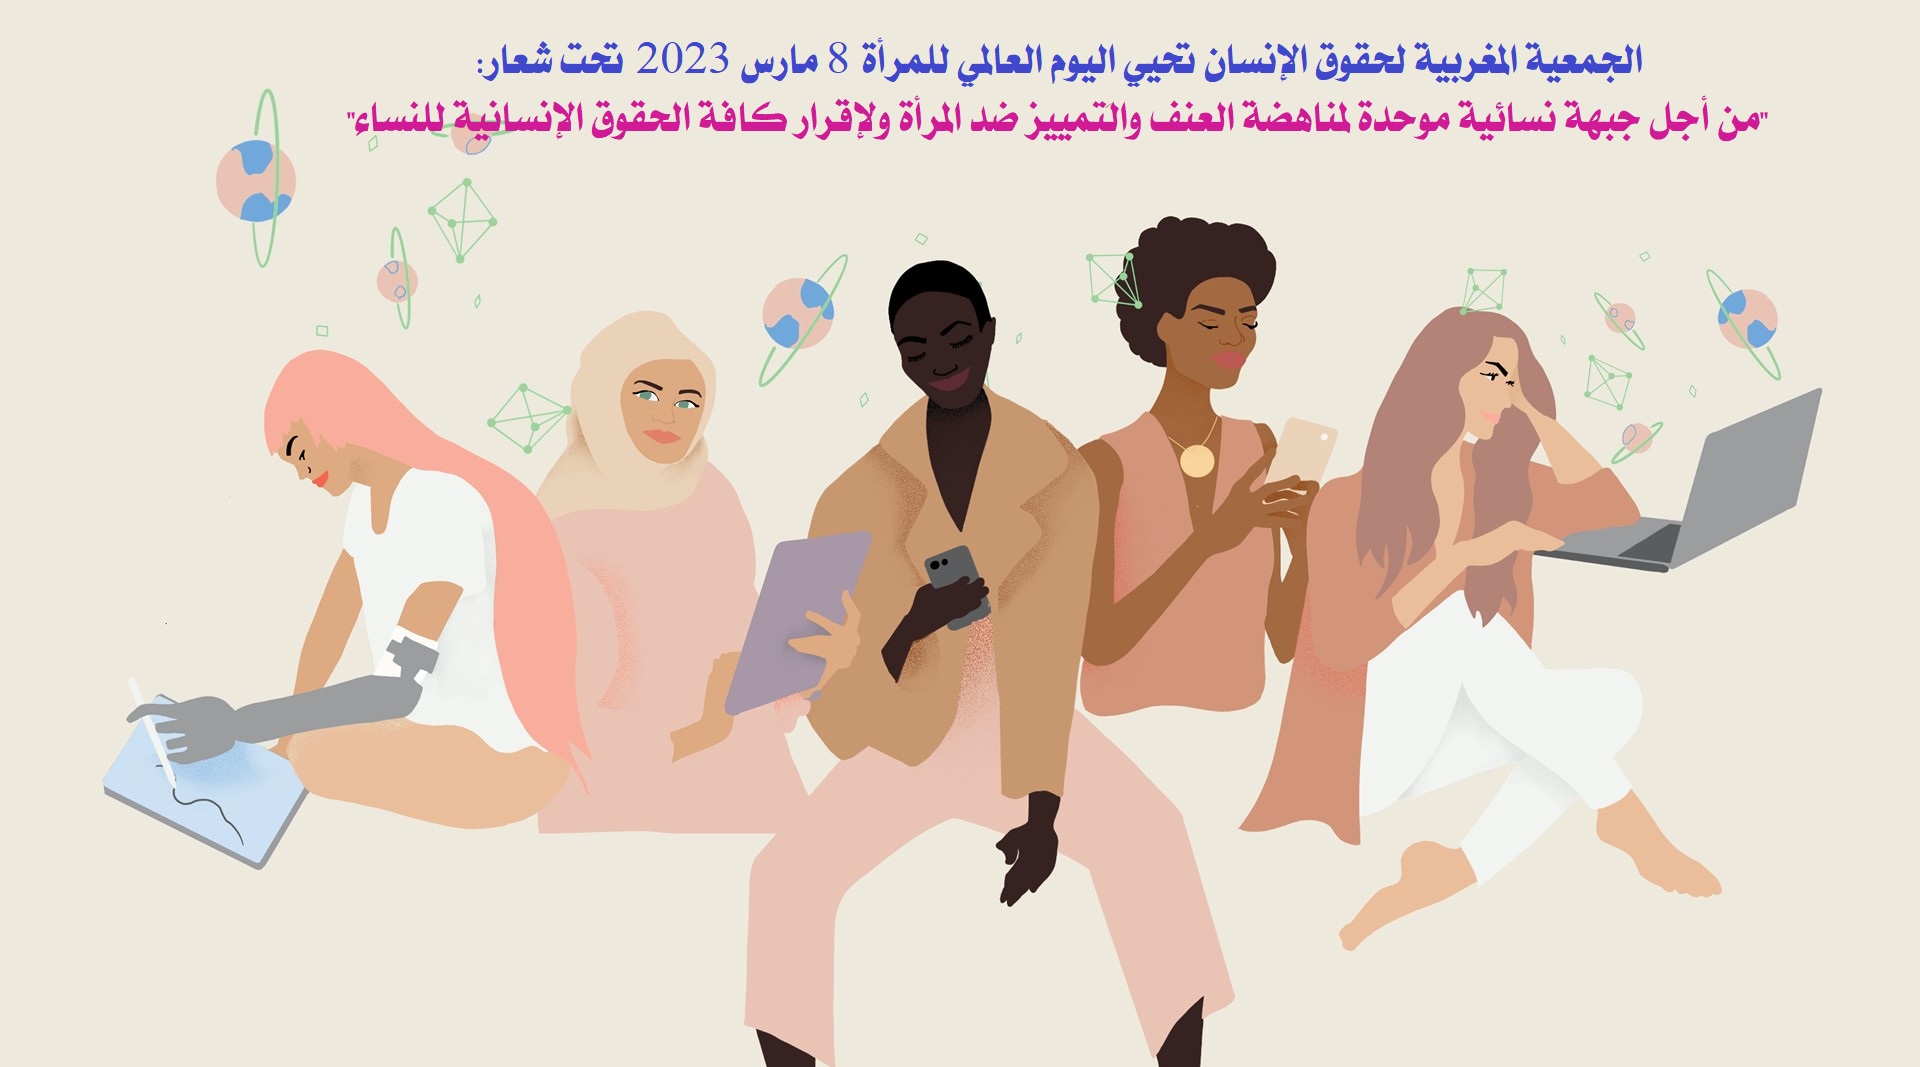 الجمعية المغربية لحقوق الإنسان تحيي اليوم العالمي للمرأة 8 مارس 2023 